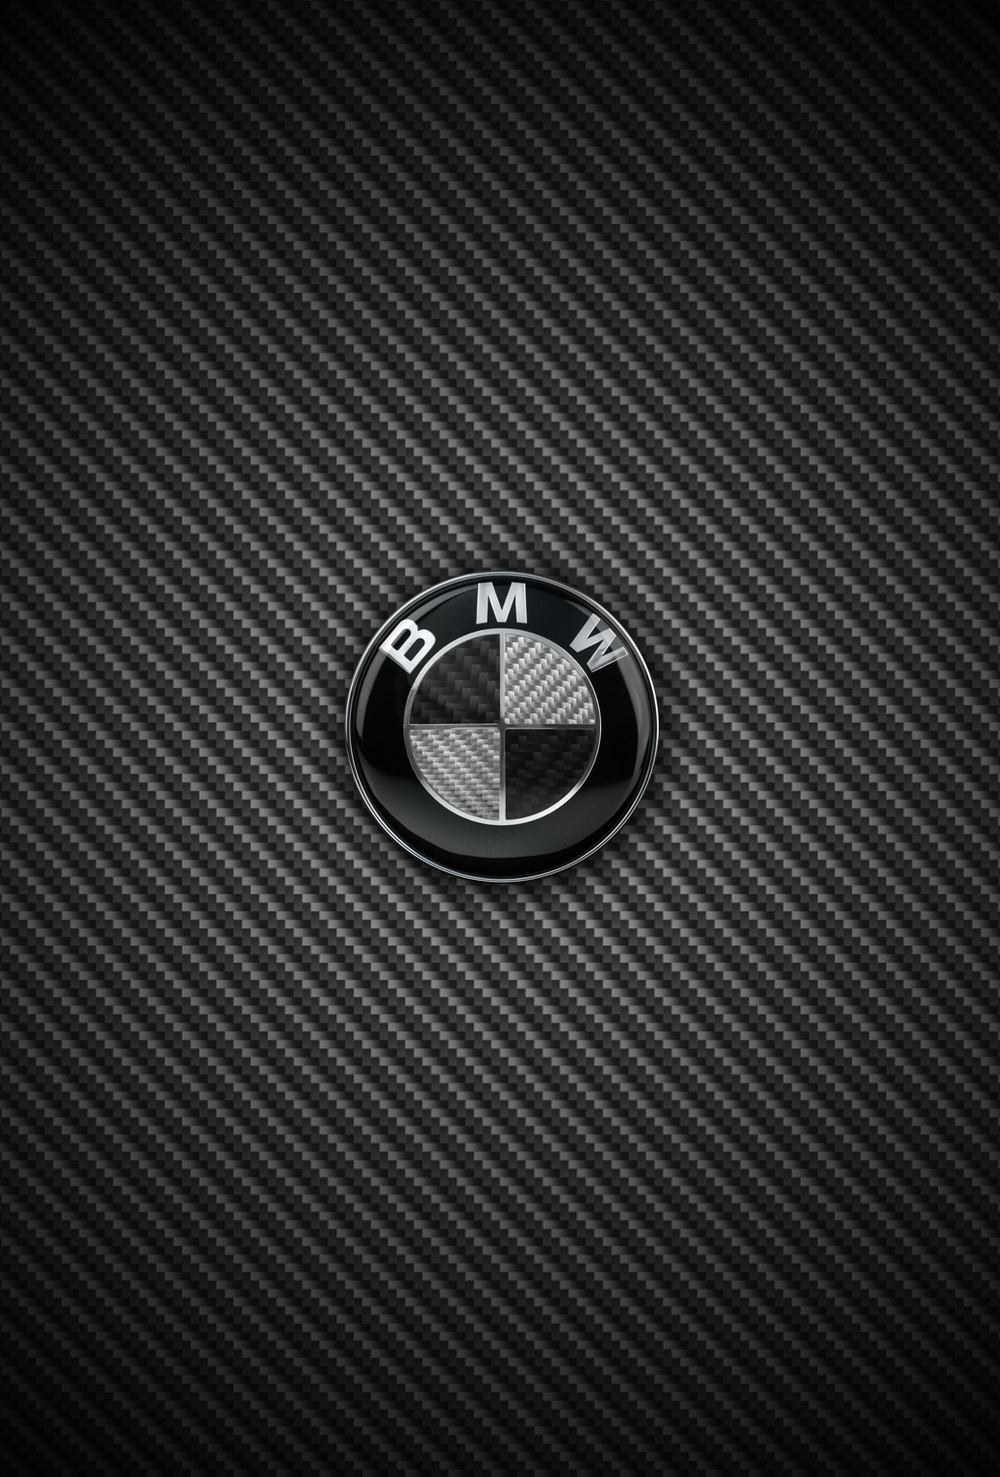 Bmw Logo Iphone Wallpaper - image